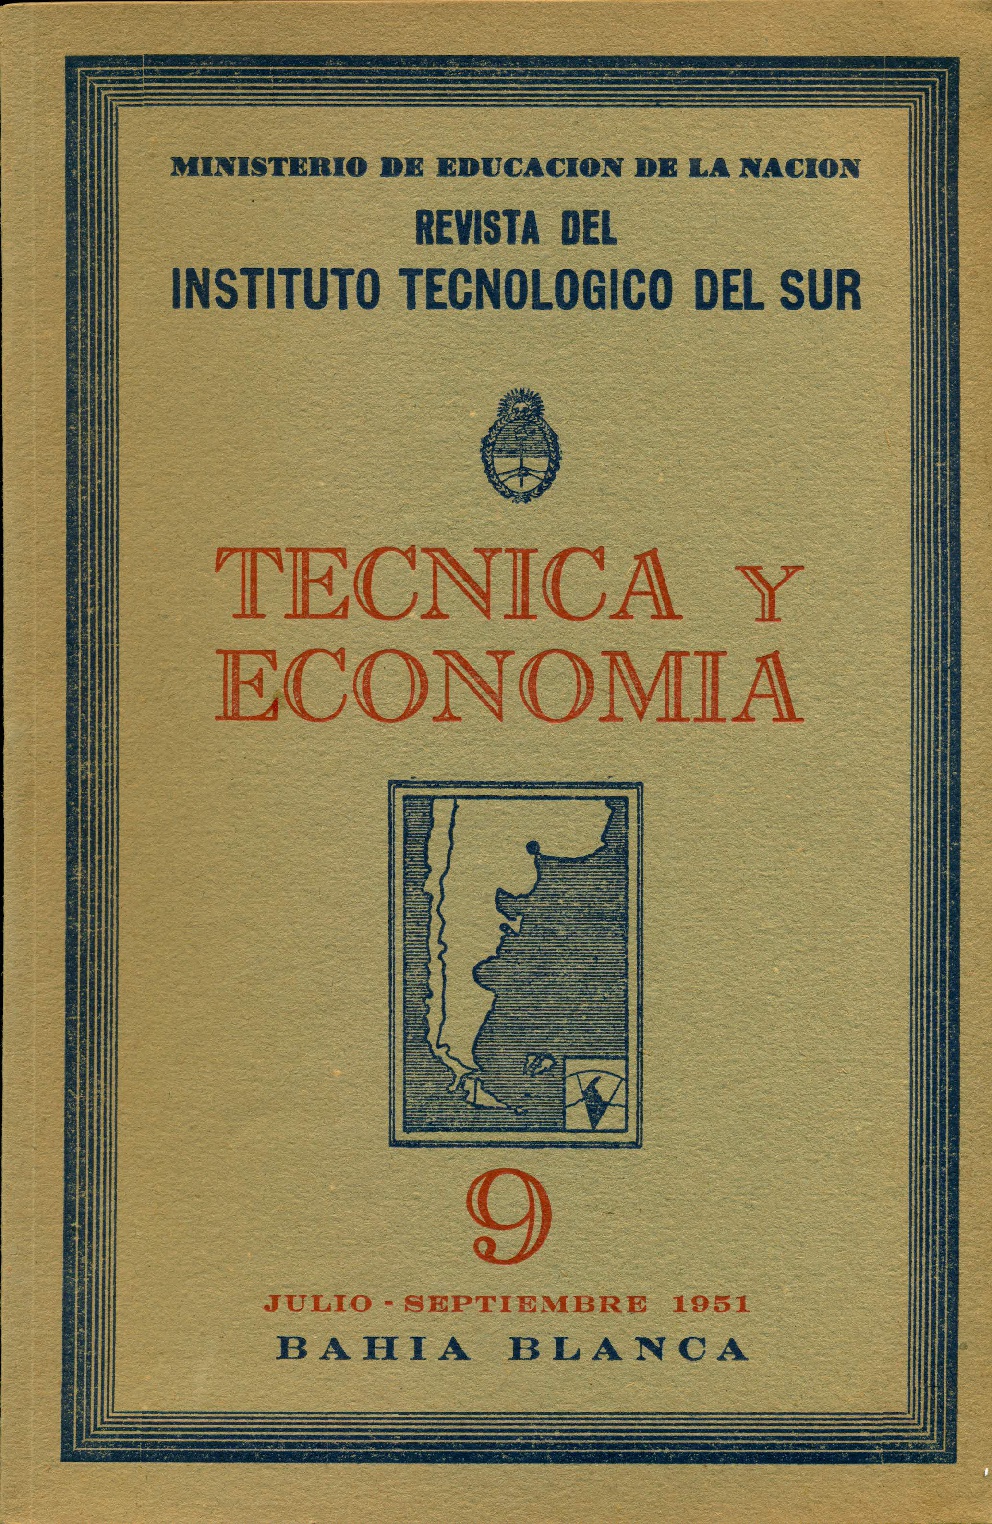 					Ver Vol. 3 Núm. 9 (1951): Técnica y Economía
				